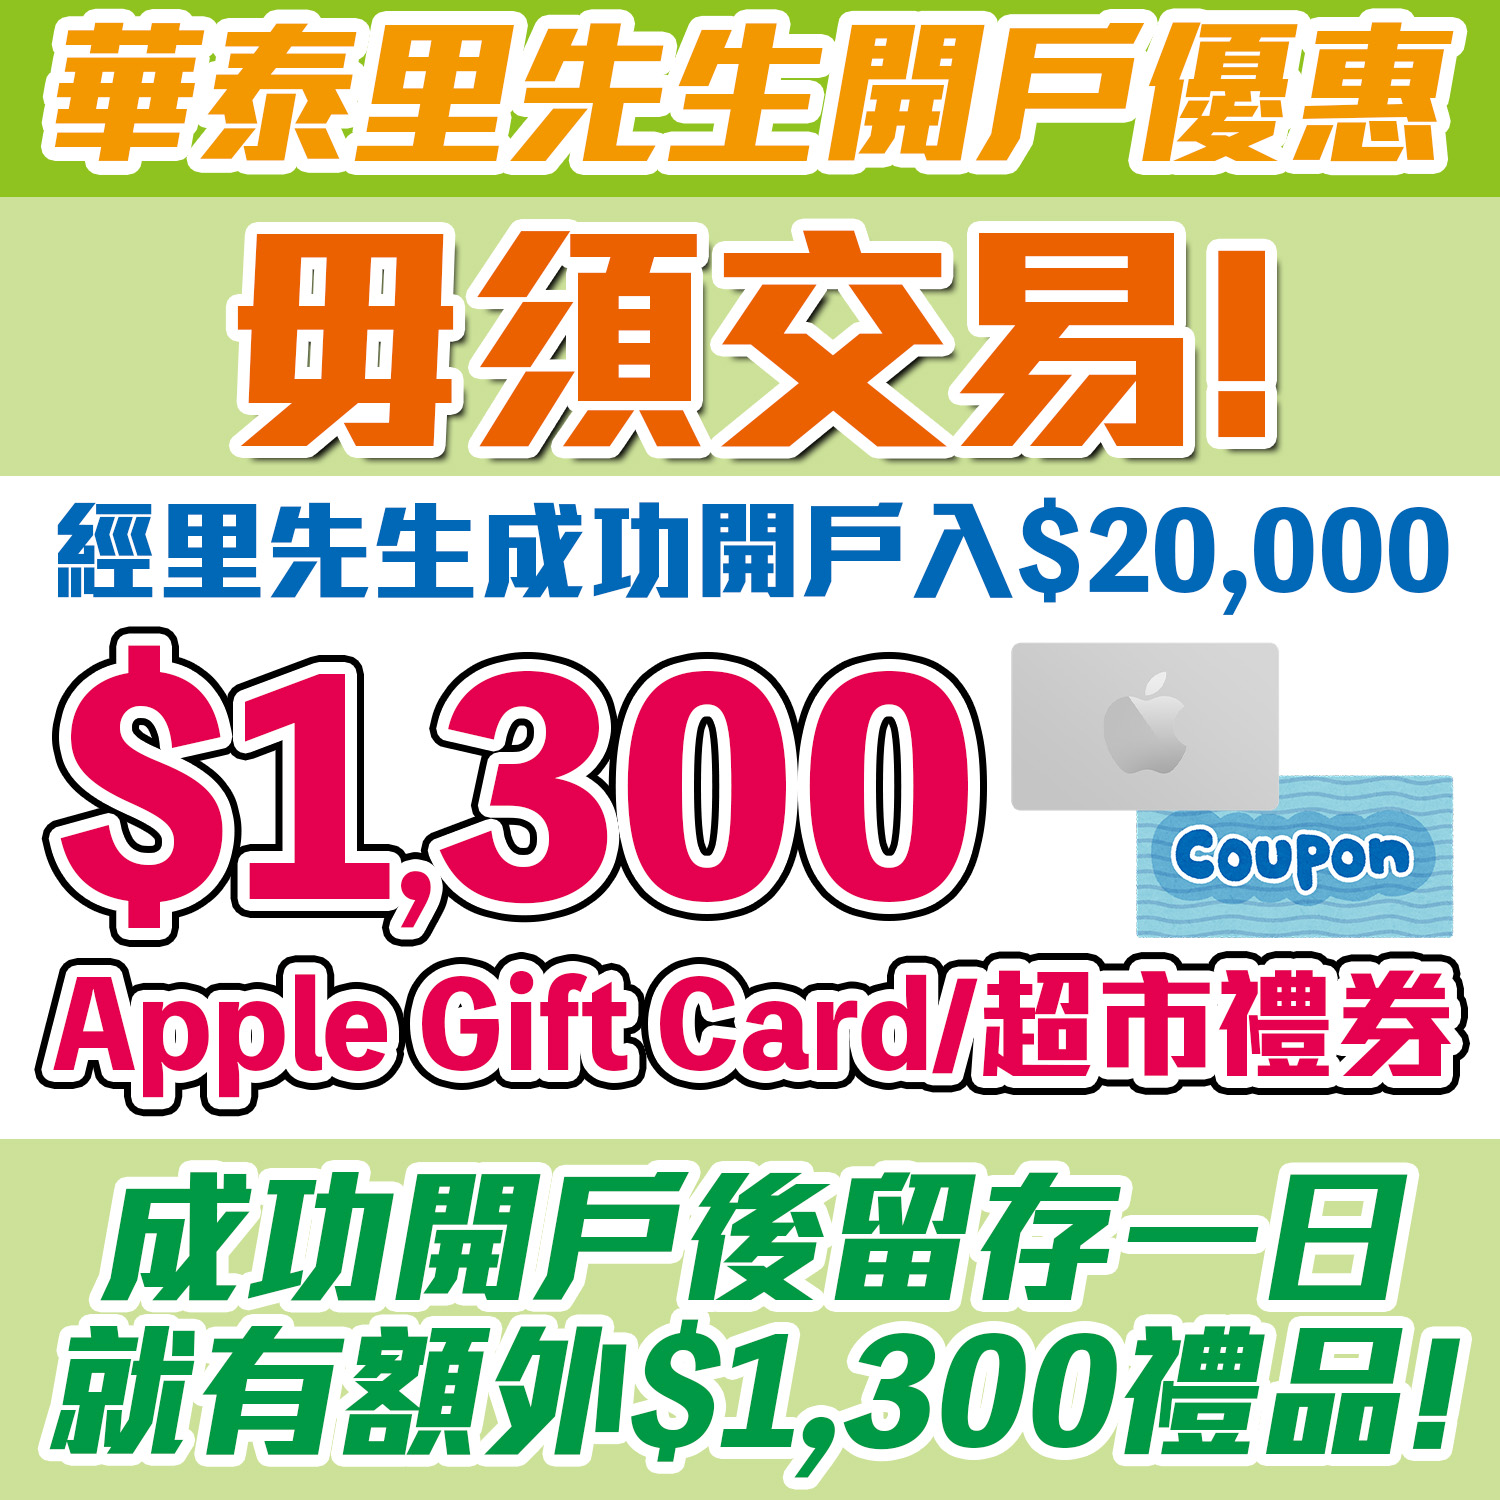 華泰開戶賺$1,300 Apple Gift Card/ 超市禮券！毋須交易！開戶並首次入$20,000放一日就可以食迎新！